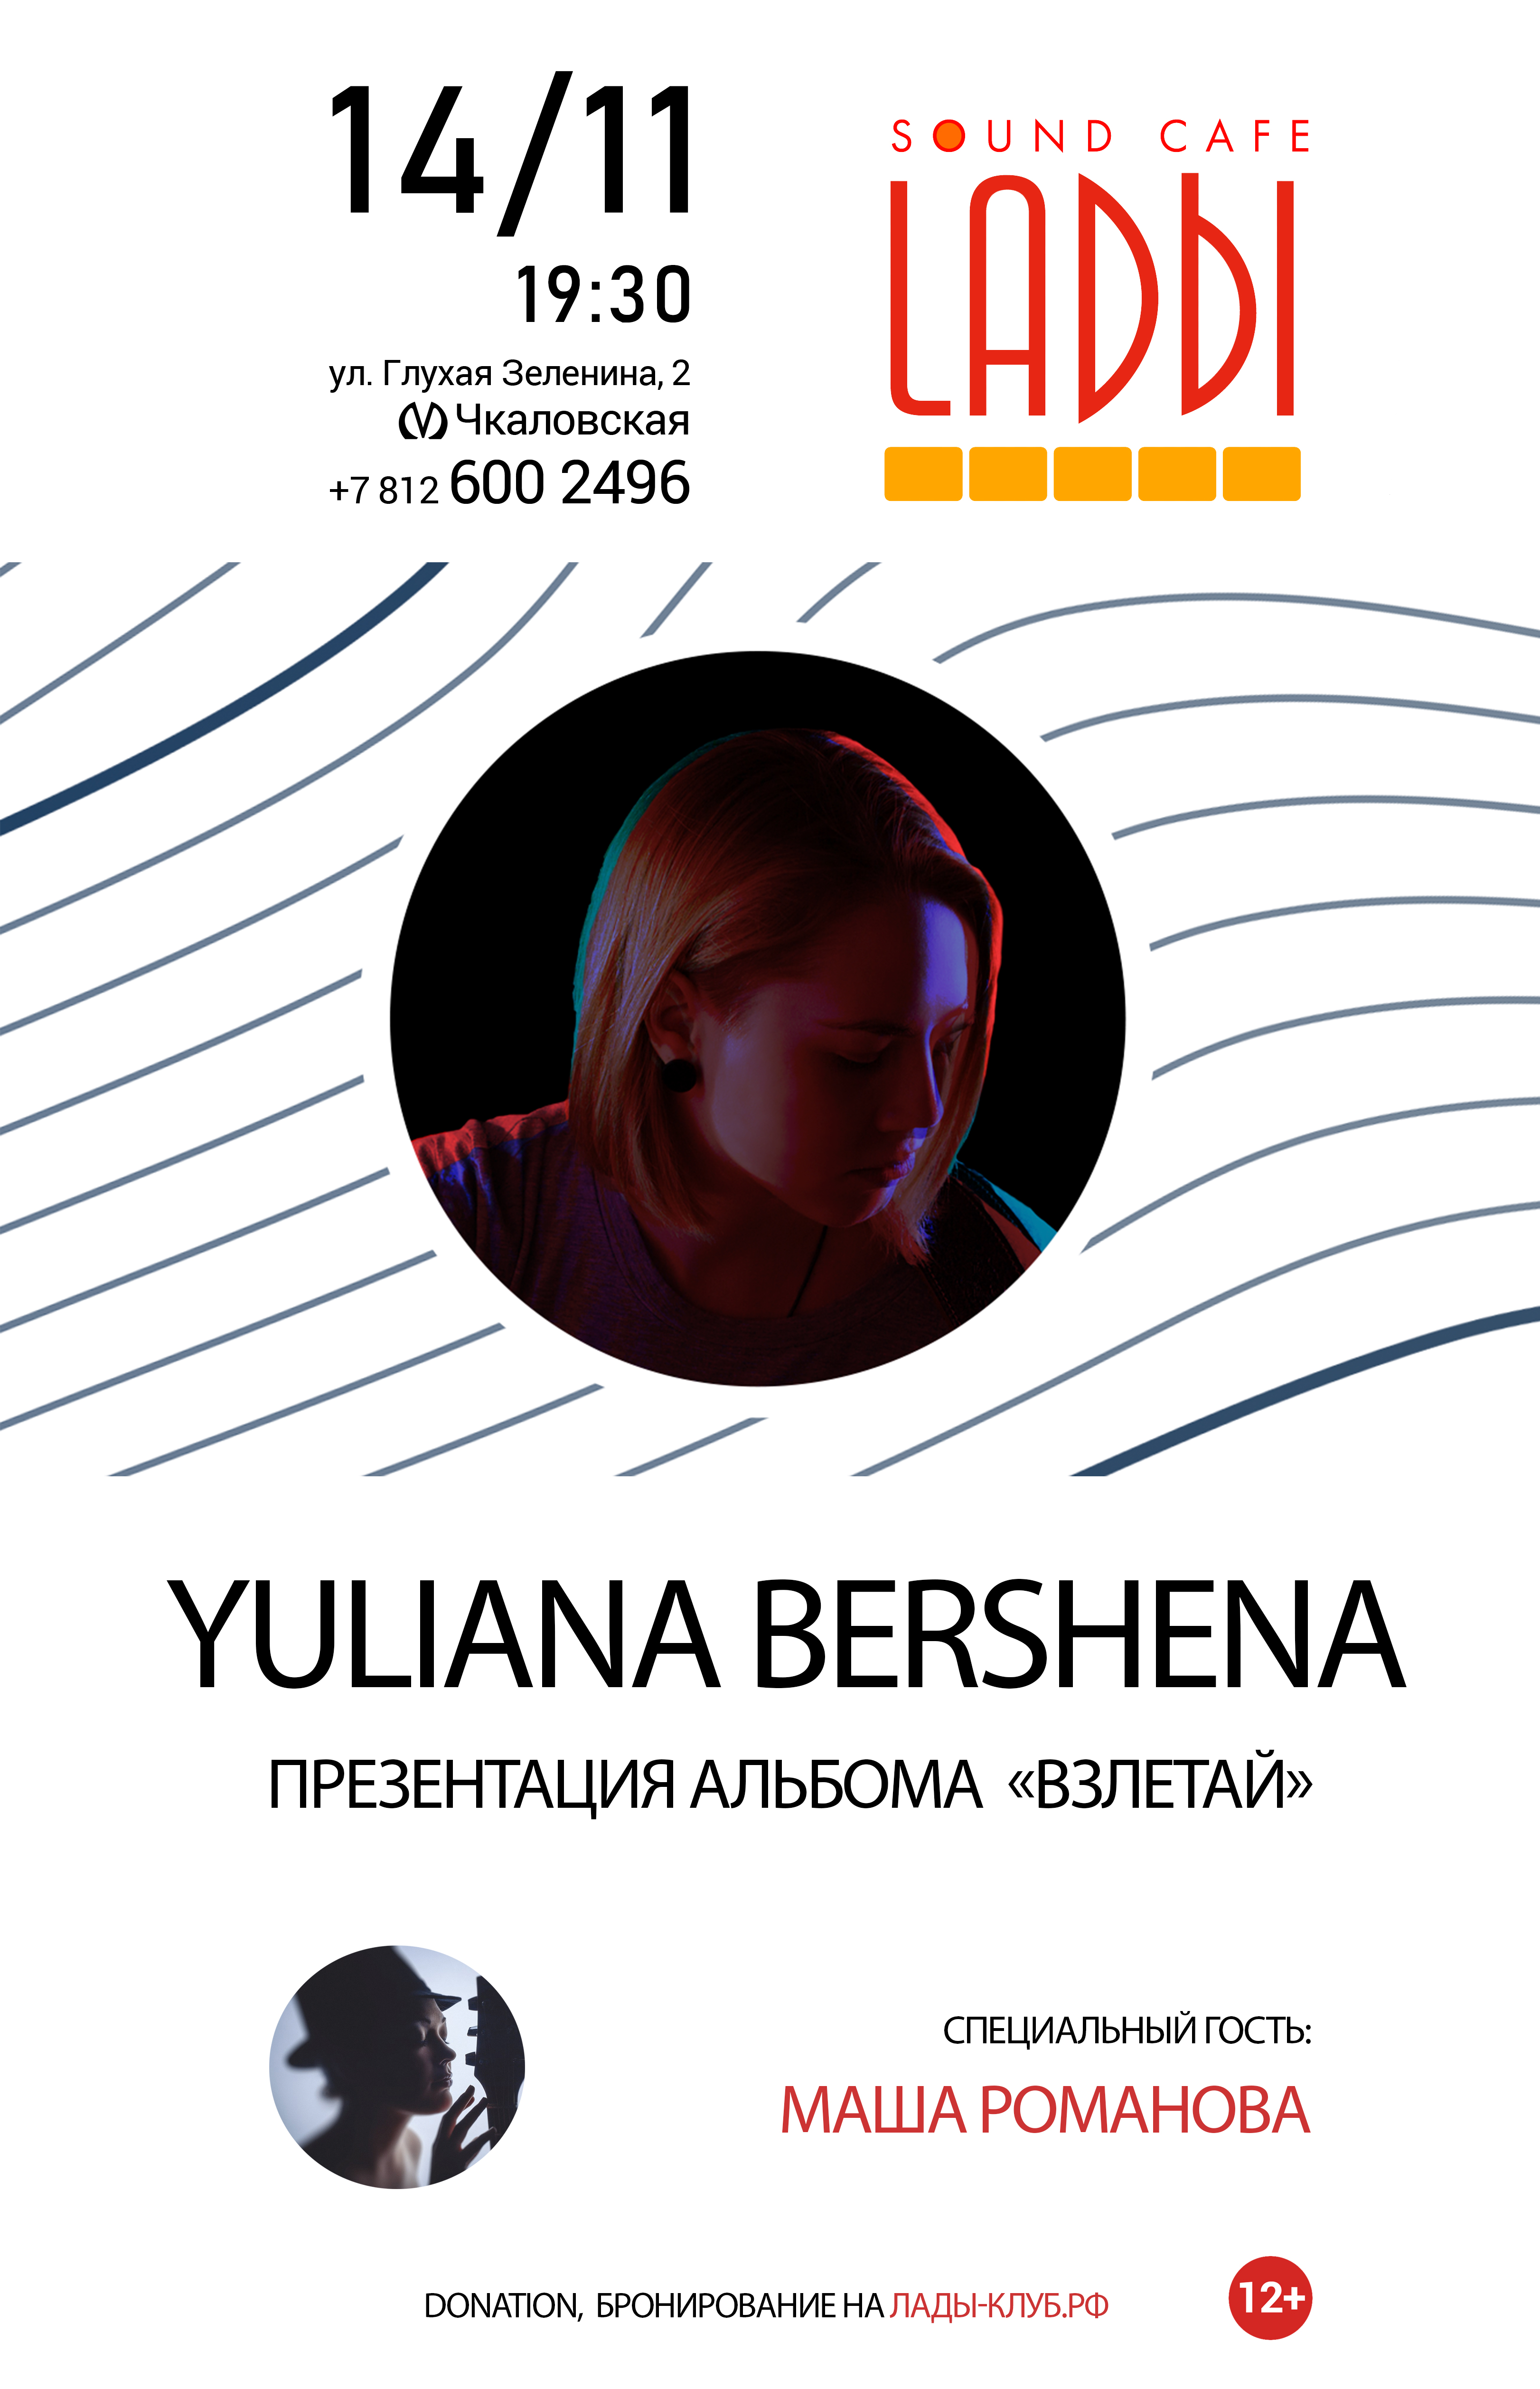 Юлиана Бершена 14 ноября 2019, концерт в LADЫ, Санкт-Петербург